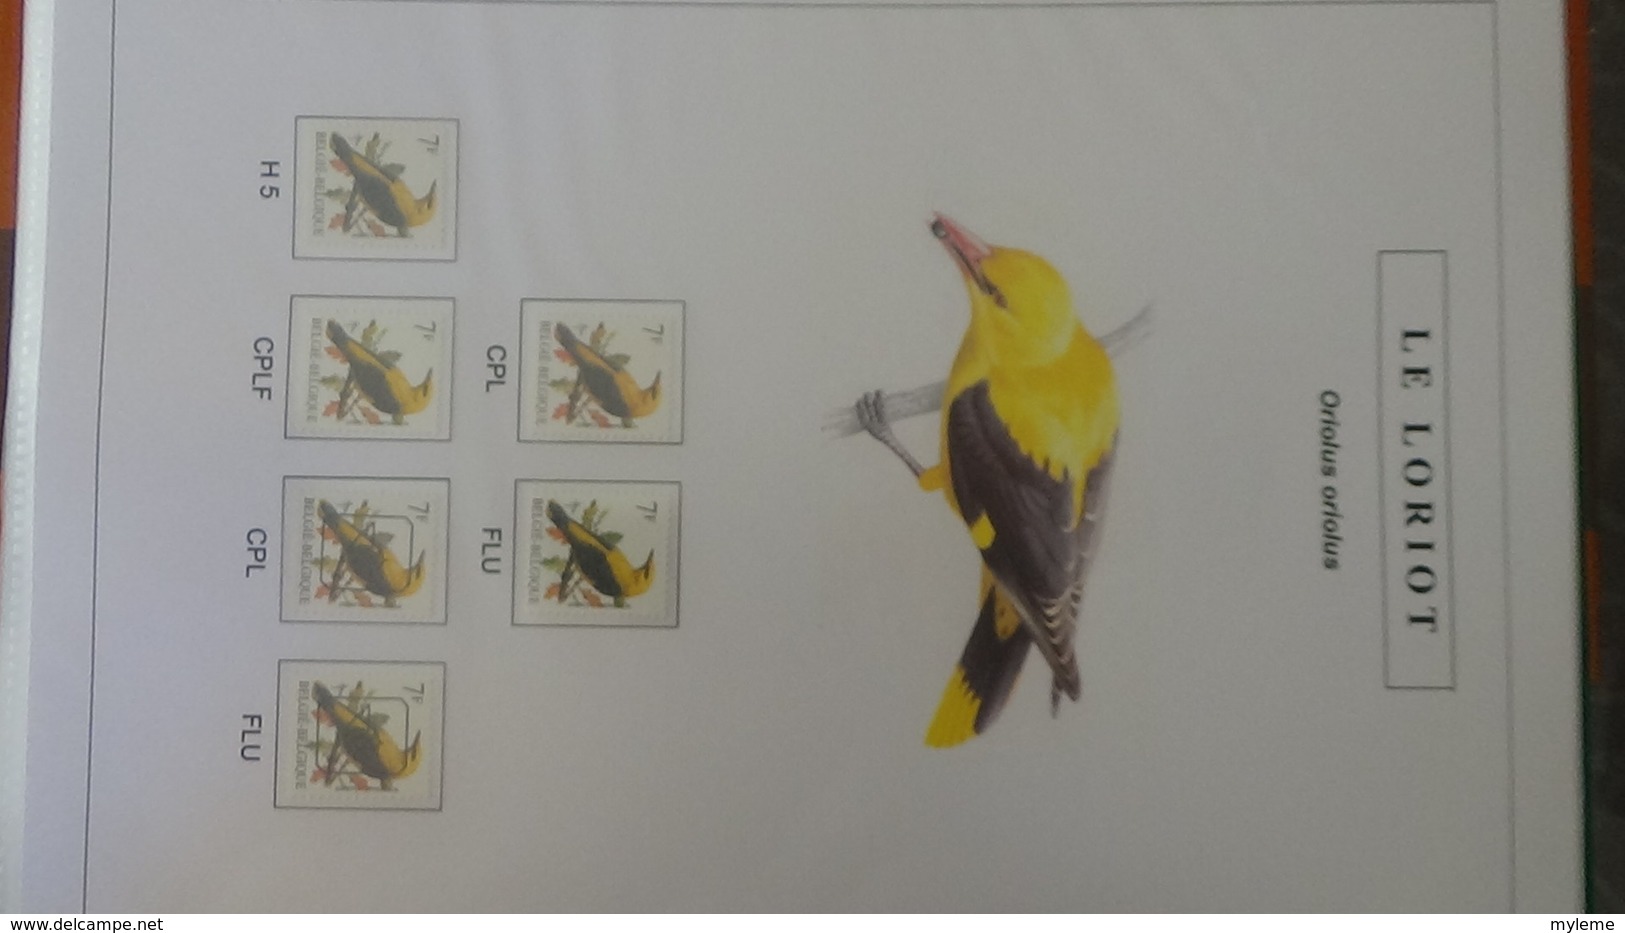 Belle étude sur les oiseaux par l'artiste André BUZIN. Super travail en timbres et blocs ** A saisir !!!